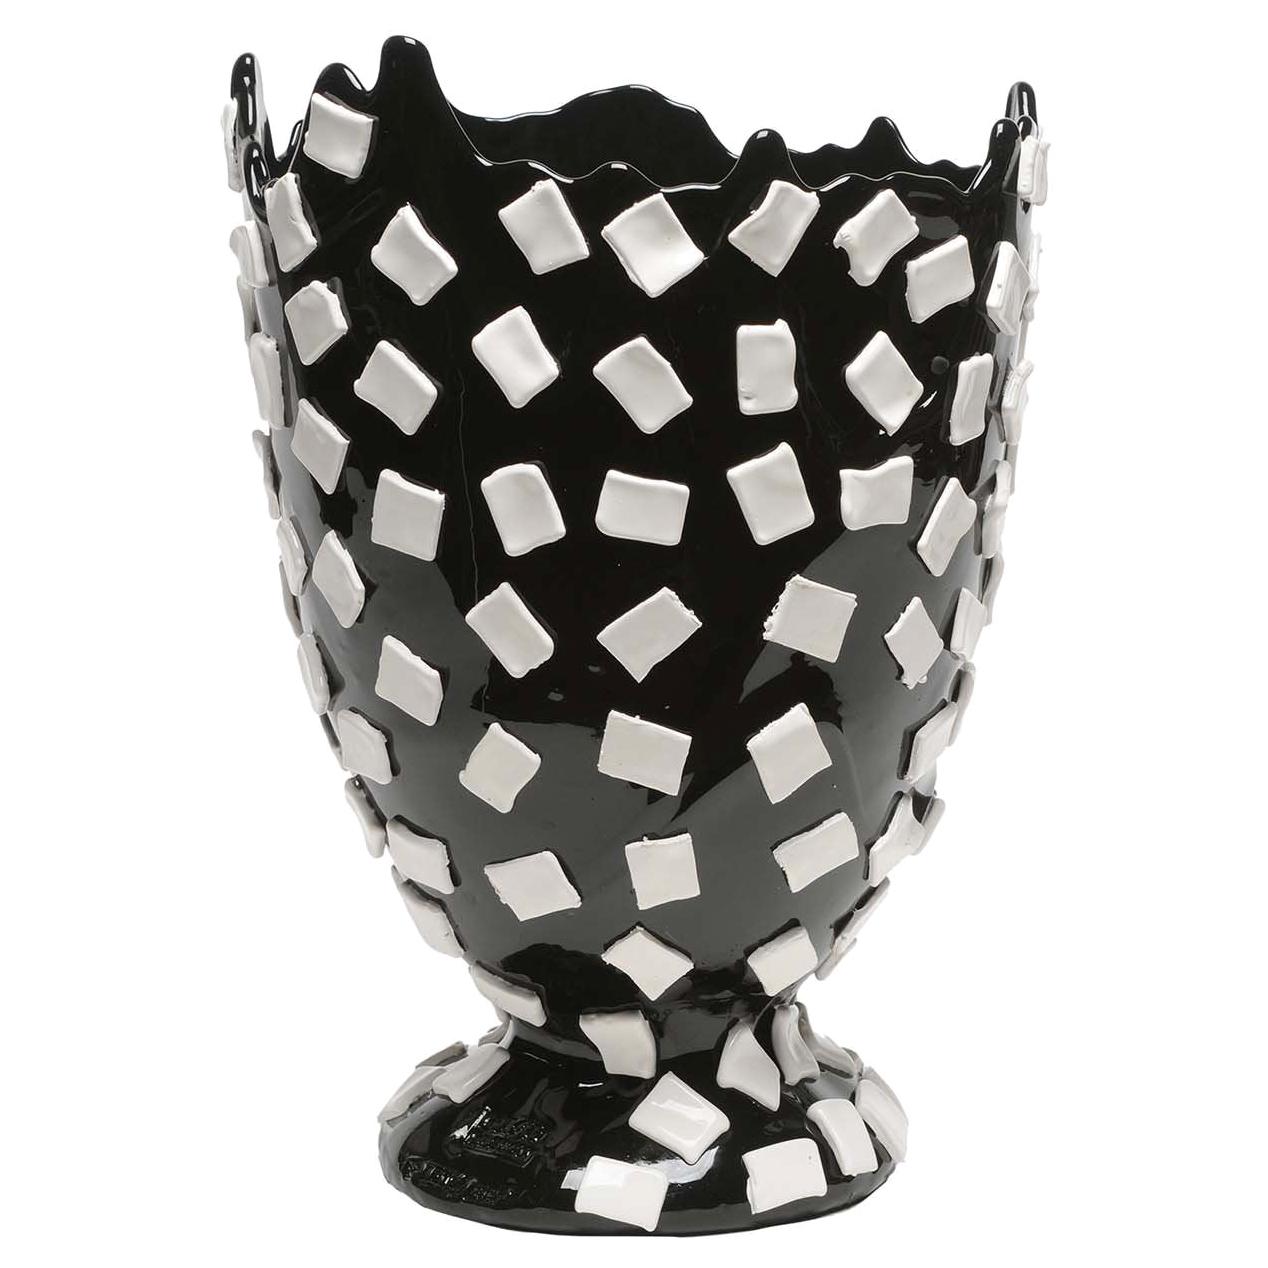 Rock Black and White Large Vase by Gaetano Pesce